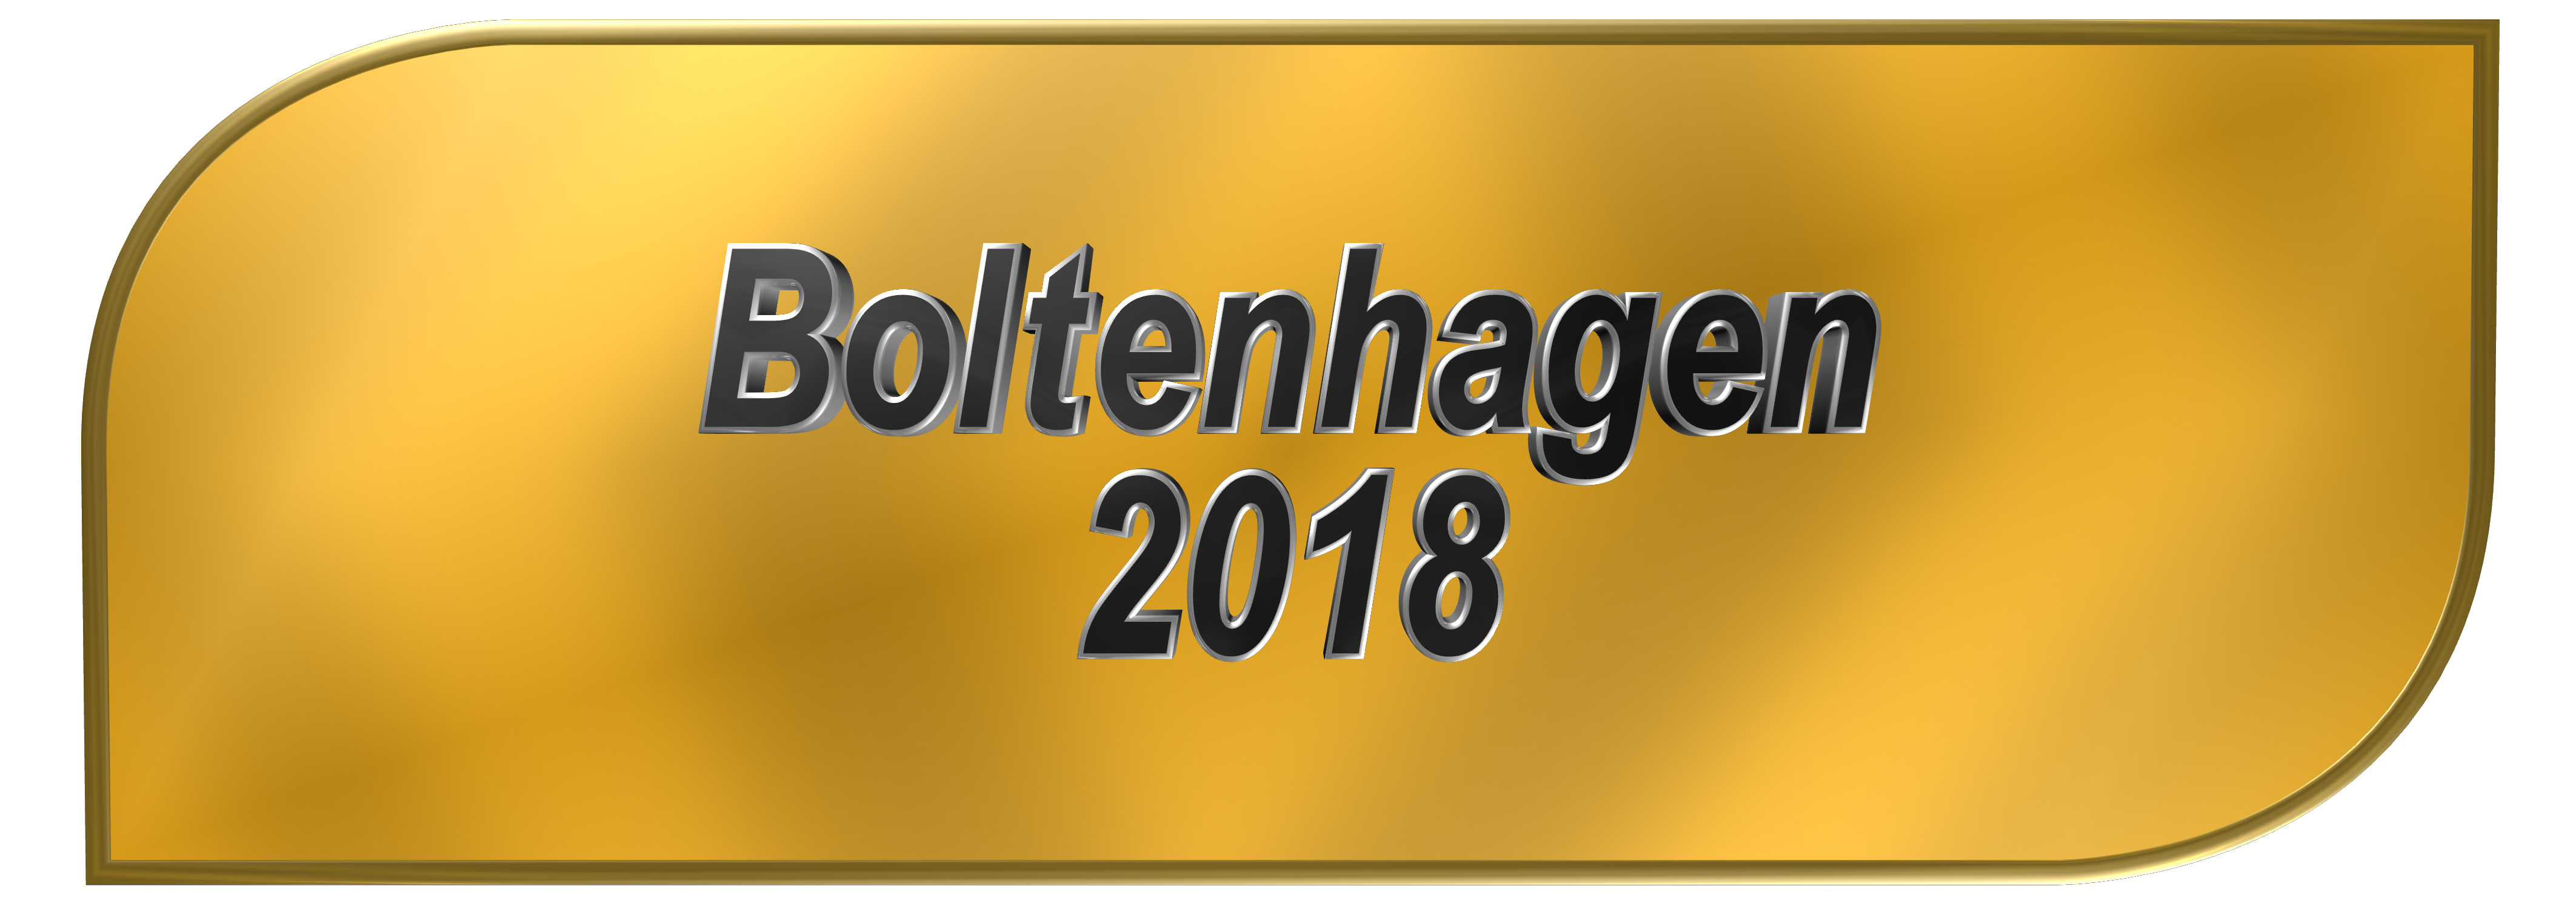 Button Boltenhagen 2018